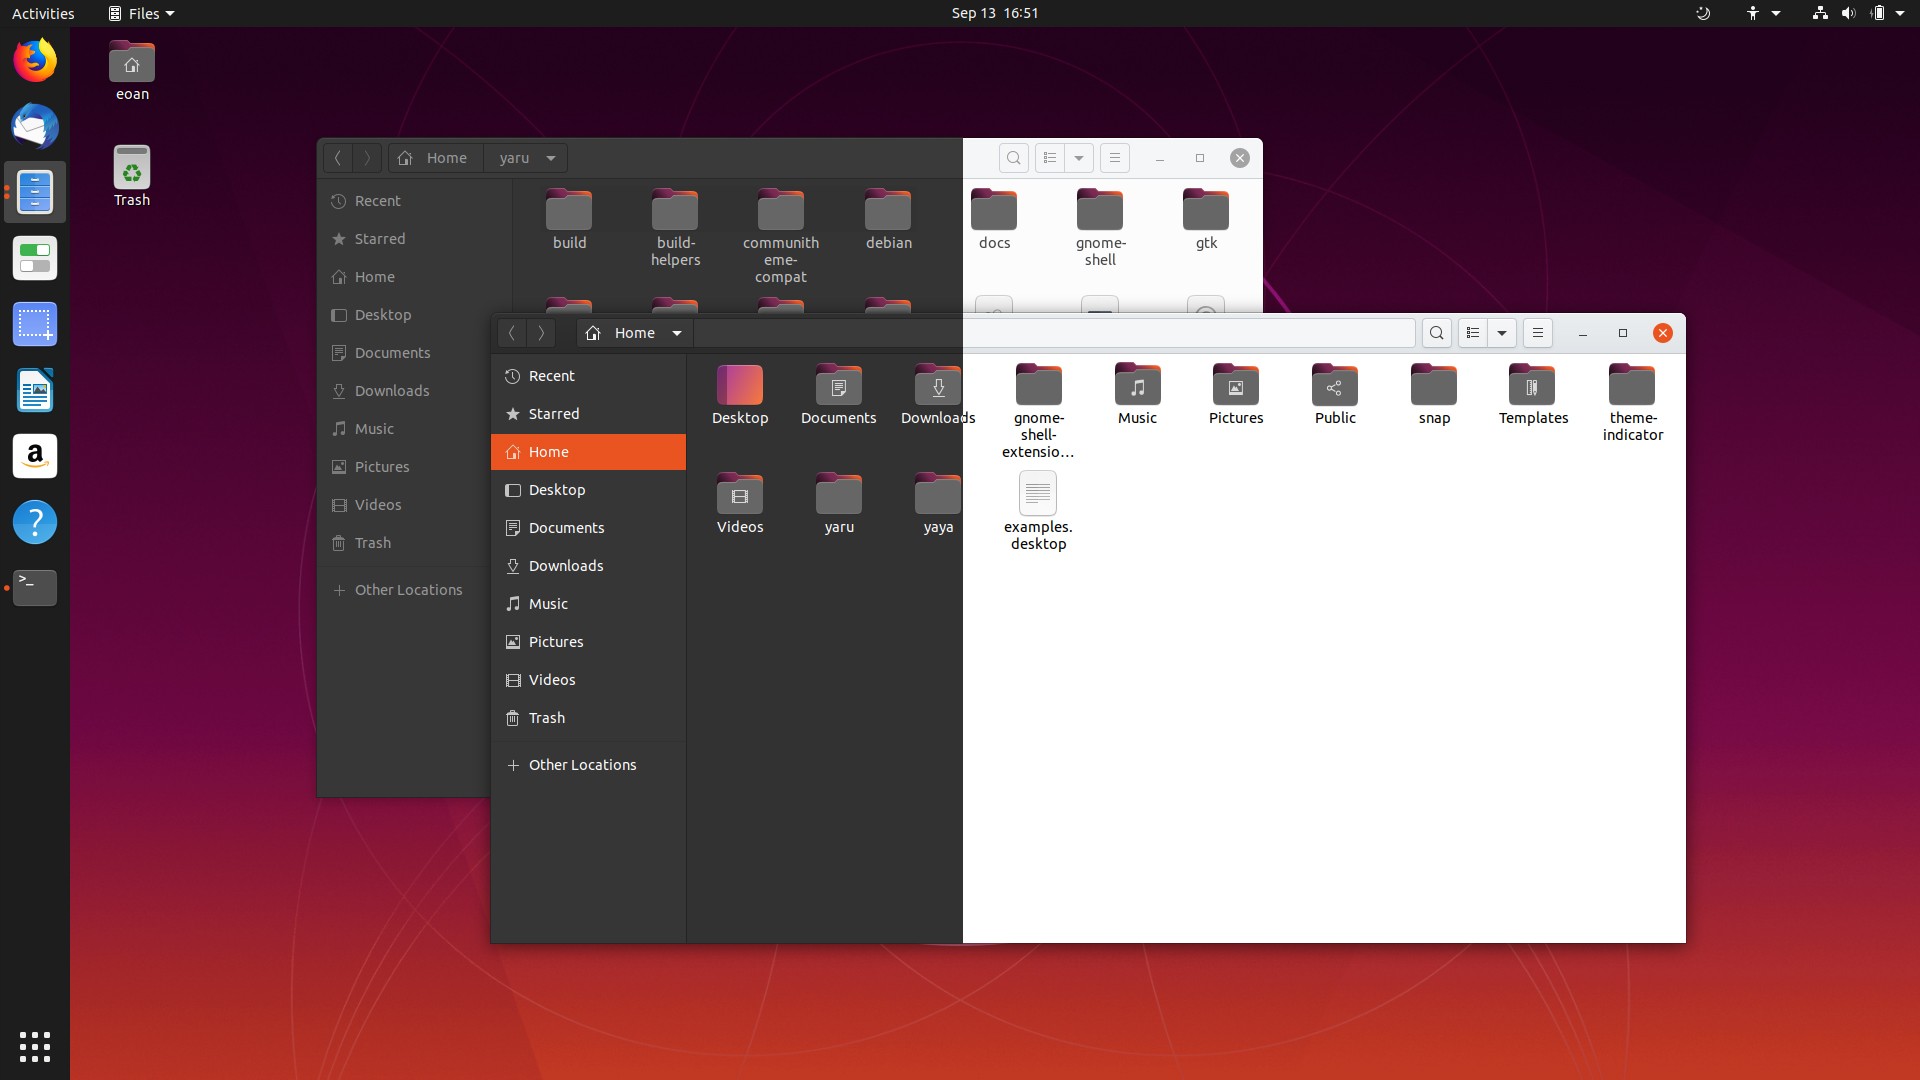 download microsoft teams for ubuntu 20.04